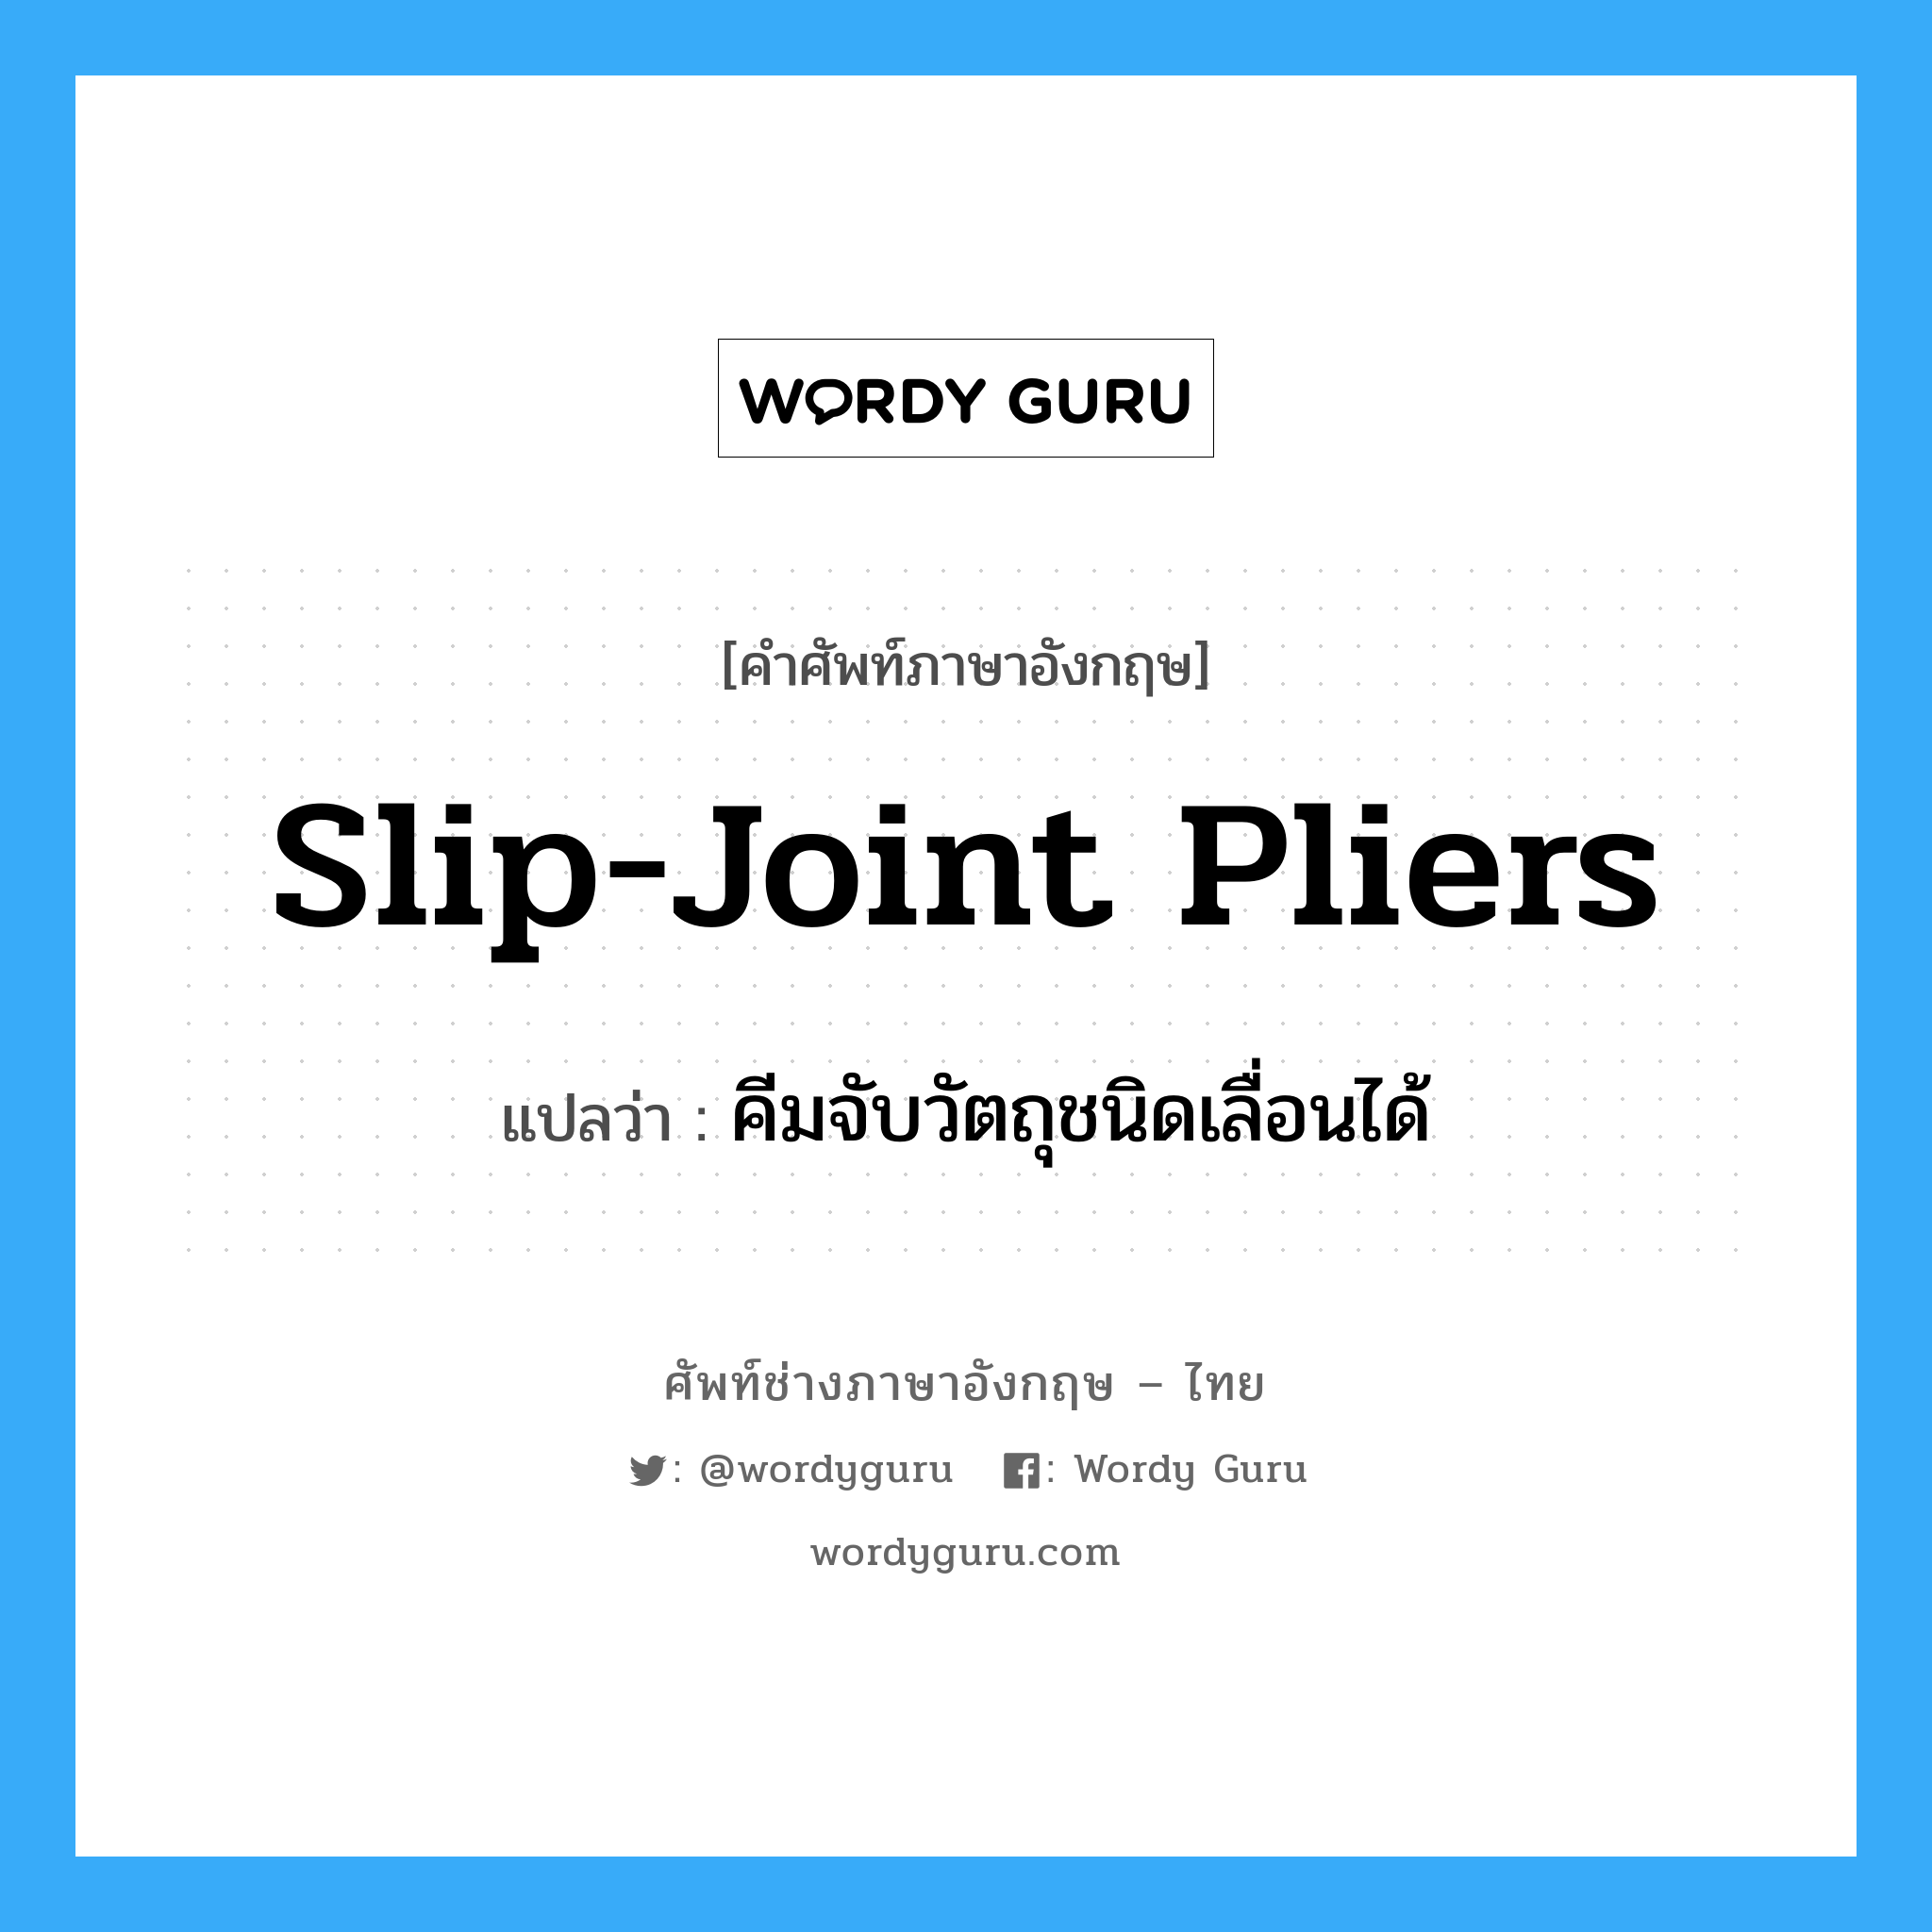 slip-joint pliers แปลว่า?, คำศัพท์ช่างภาษาอังกฤษ - ไทย slip-joint pliers คำศัพท์ภาษาอังกฤษ slip-joint pliers แปลว่า คีมจับวัตถุชนิดเลื่อนได้